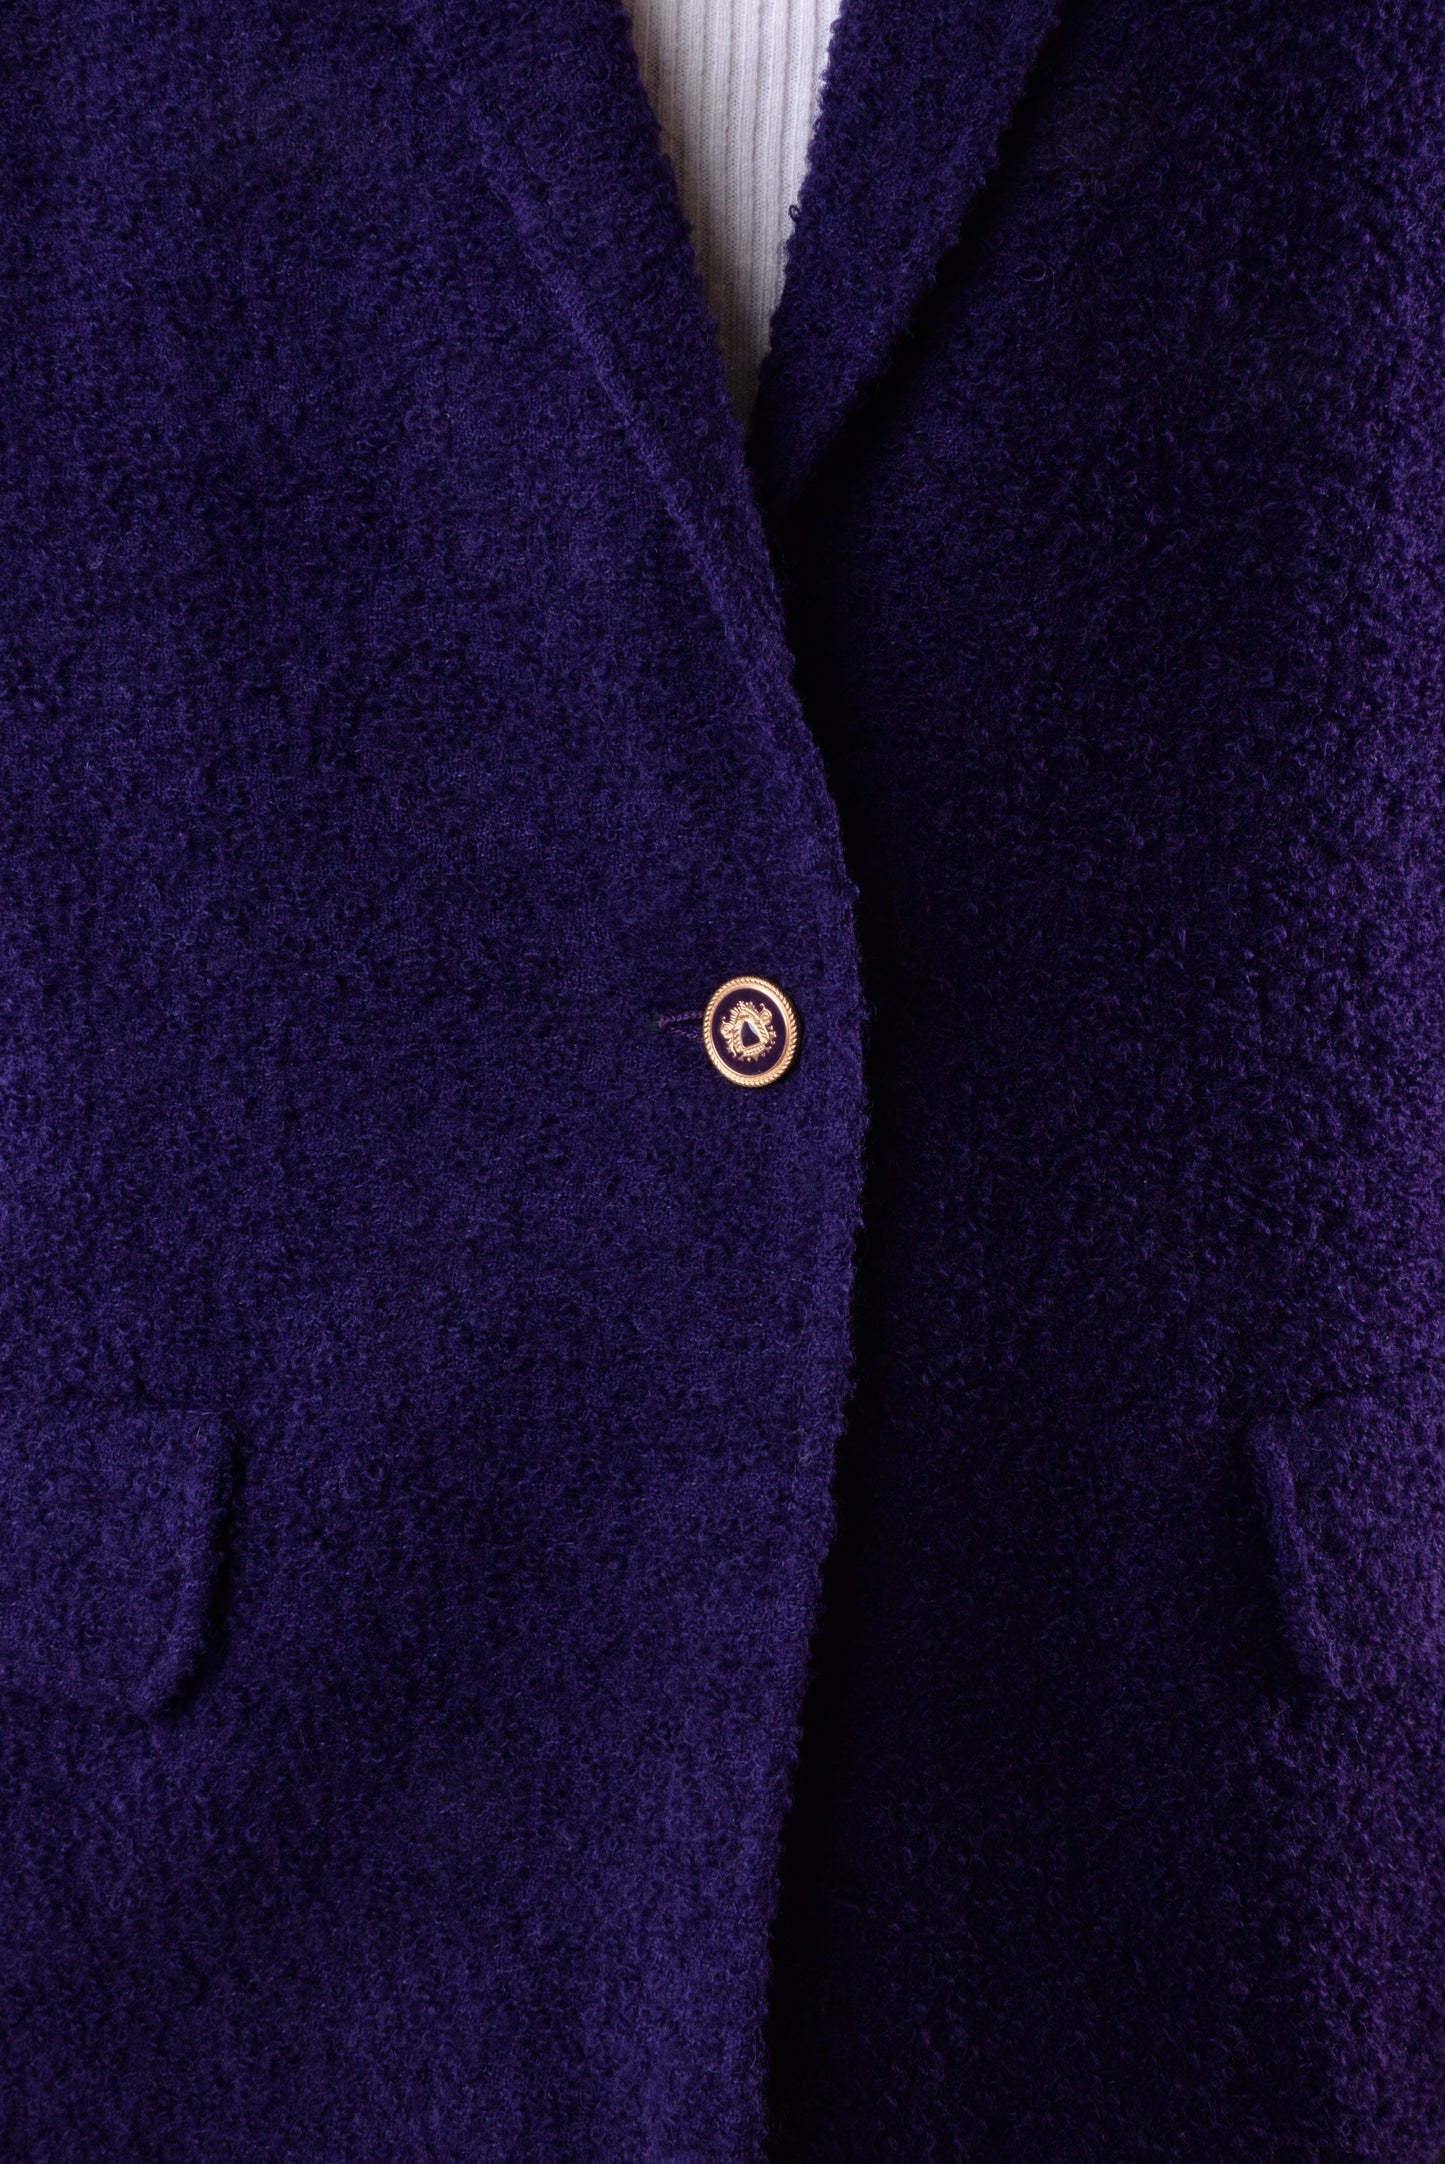 Aubergine Textured Wool Blazer